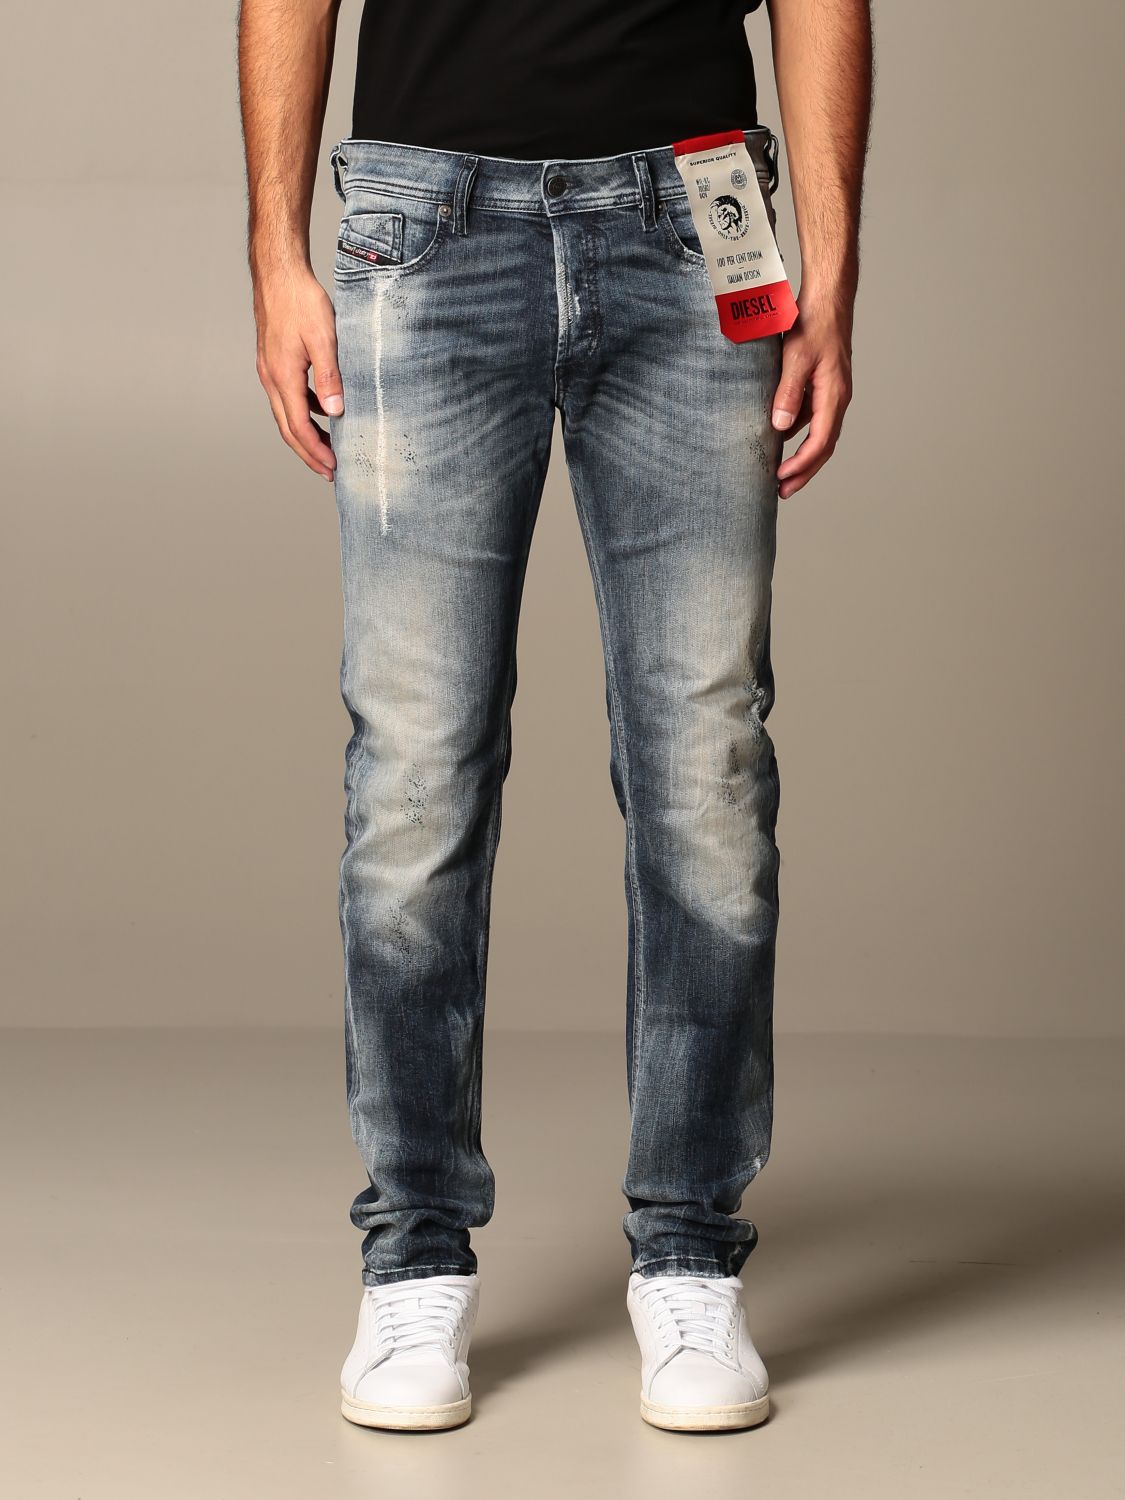 DIESEL: in skinny used denim - Stone Washed | Diesel jeans 00SWJF on GIGLIO.COM